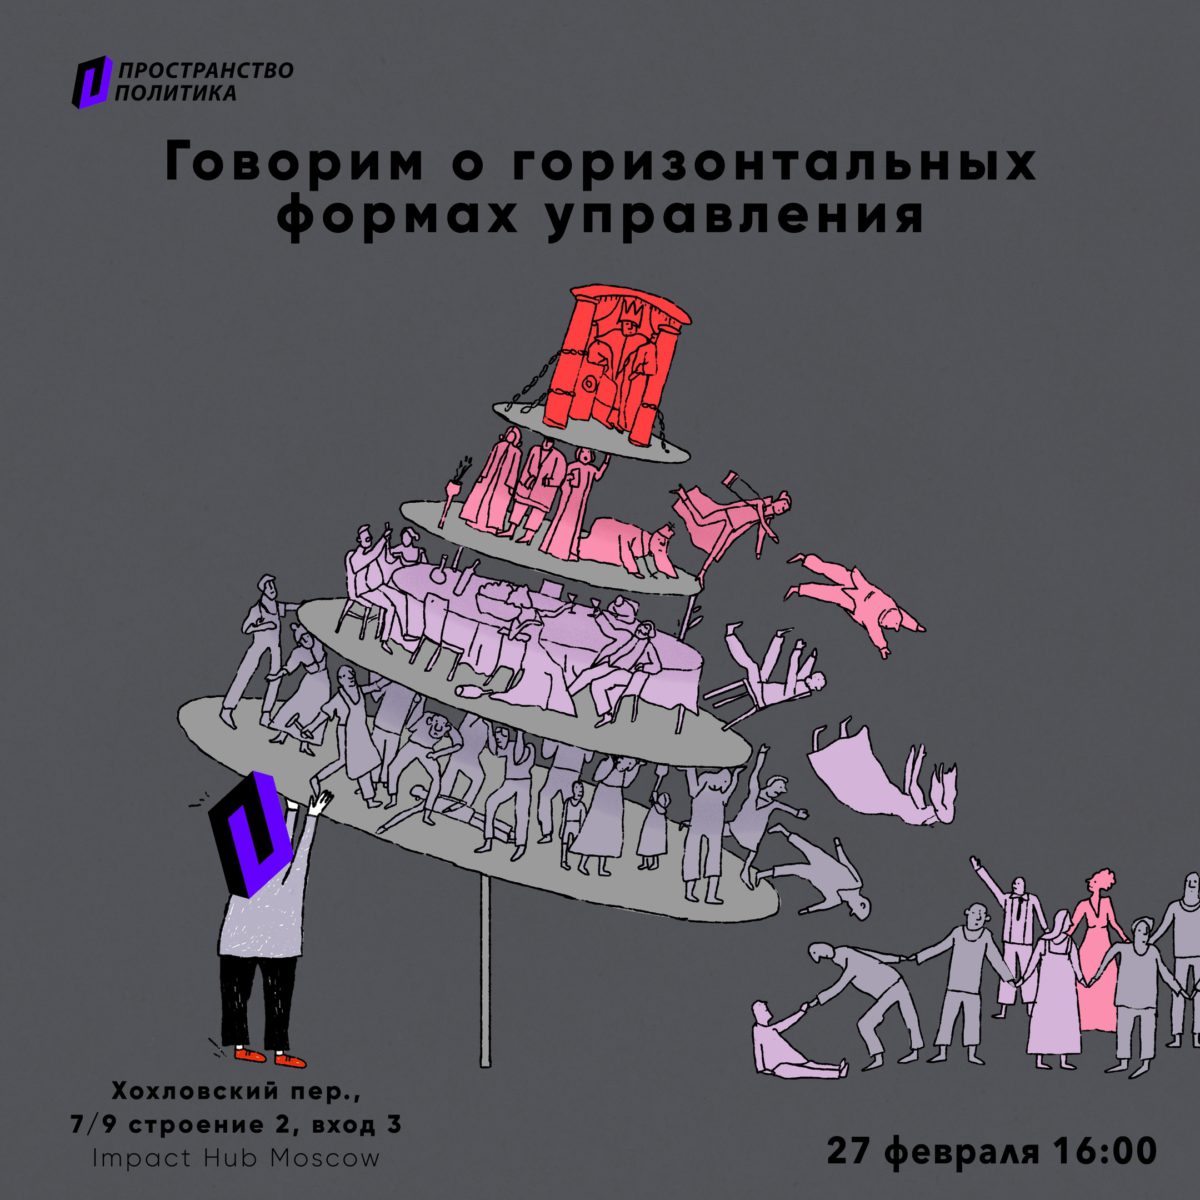 Постер мероприятия "Говорим о горизонтальных формах управления"